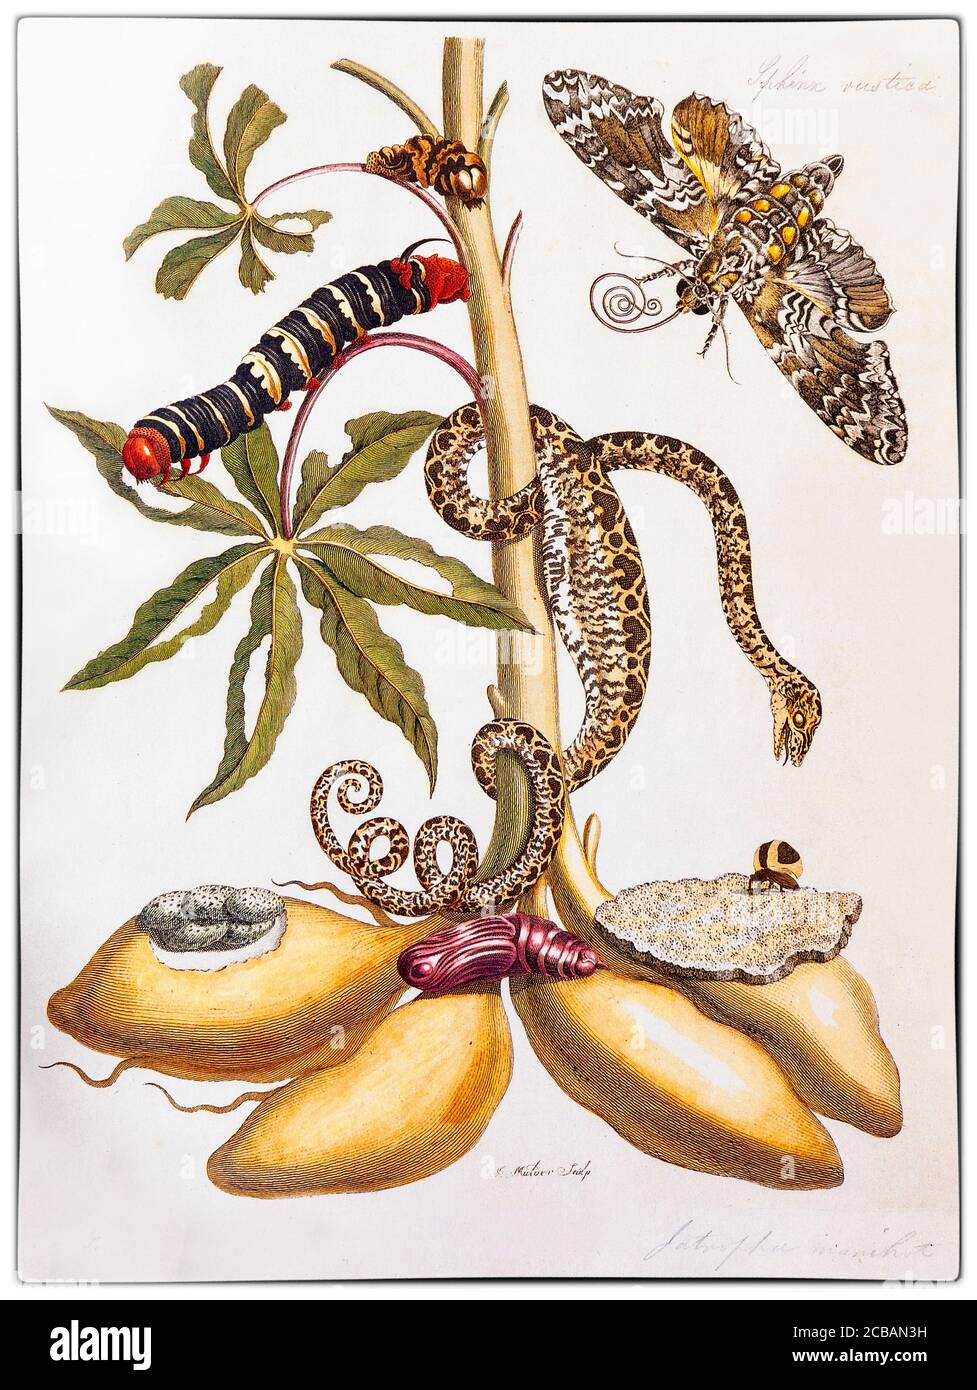 Maria Sibylla Merian (1647-1717) fue una naturalista e ilustradora científica de origen alemán, descendiente de la rama de Frankfurt de la familia Meriana Suiza. Merian fue uno de los primeros naturalistas europeos en observar insectos directamente. La ilustración muestra Manihot esculenta, comúnmente llamada yuca, un arbusto leñoso nativo de América del Sur de la familia de las espurías, Euphorbiaceae con una serpiente y metamorfosis de la moth del artista 'Metamorfosis insectorum Suriname amensium' Foto de stock